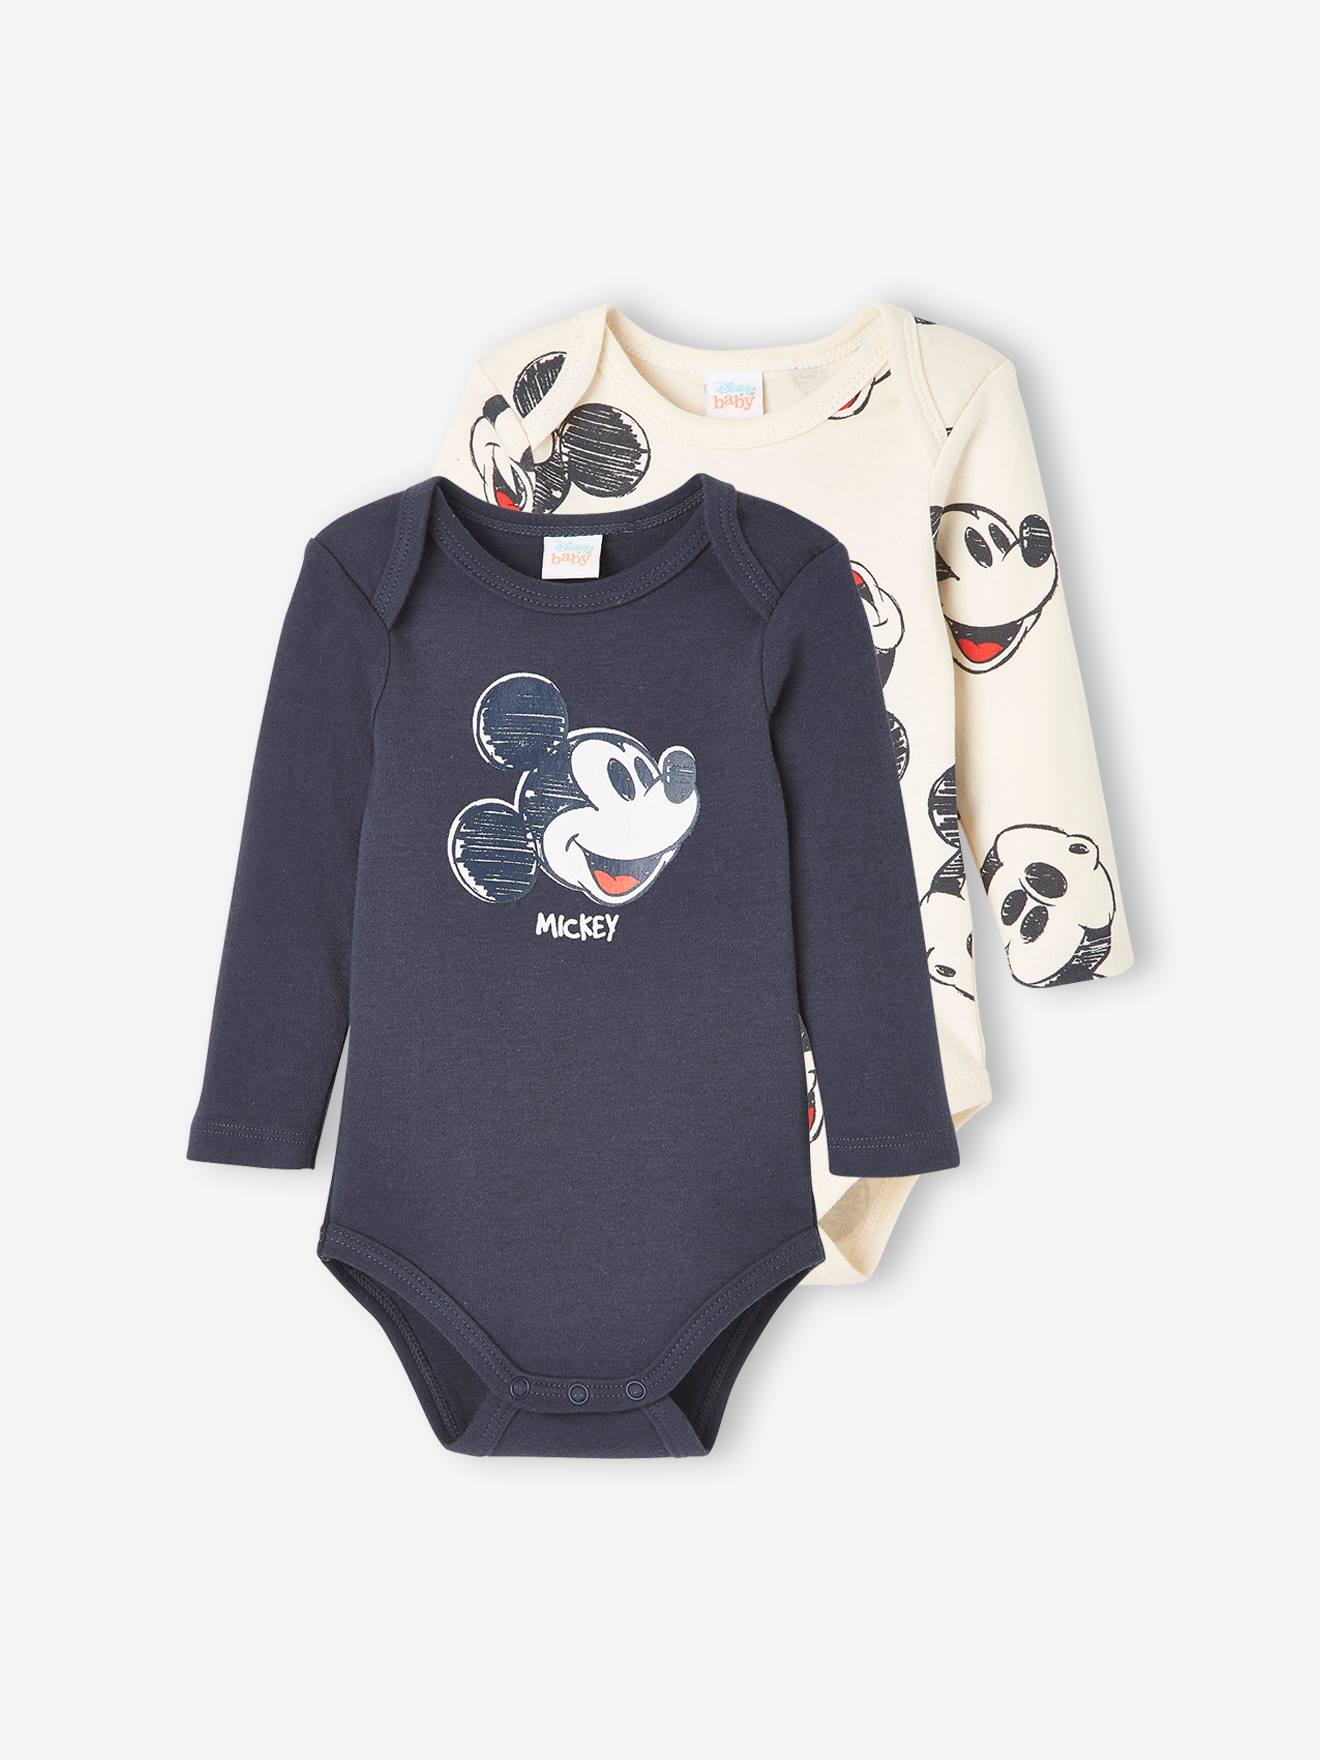 Set van 2 rompers voor babyjongens Disney® Mickey effen donkergrijs met versieri